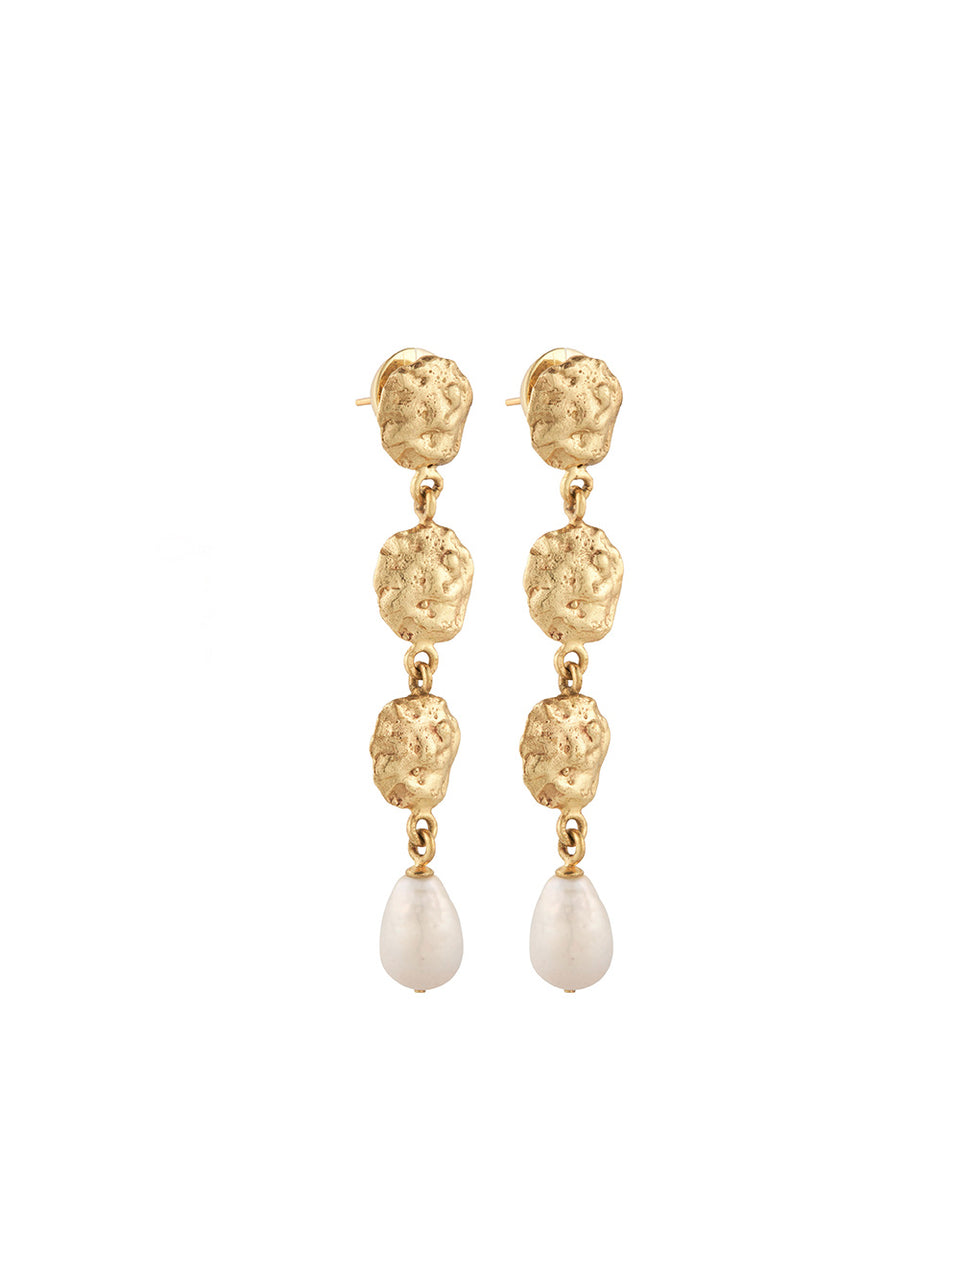 Calypso Long Drop Earring KIVARI | Gold and pearl long earrings